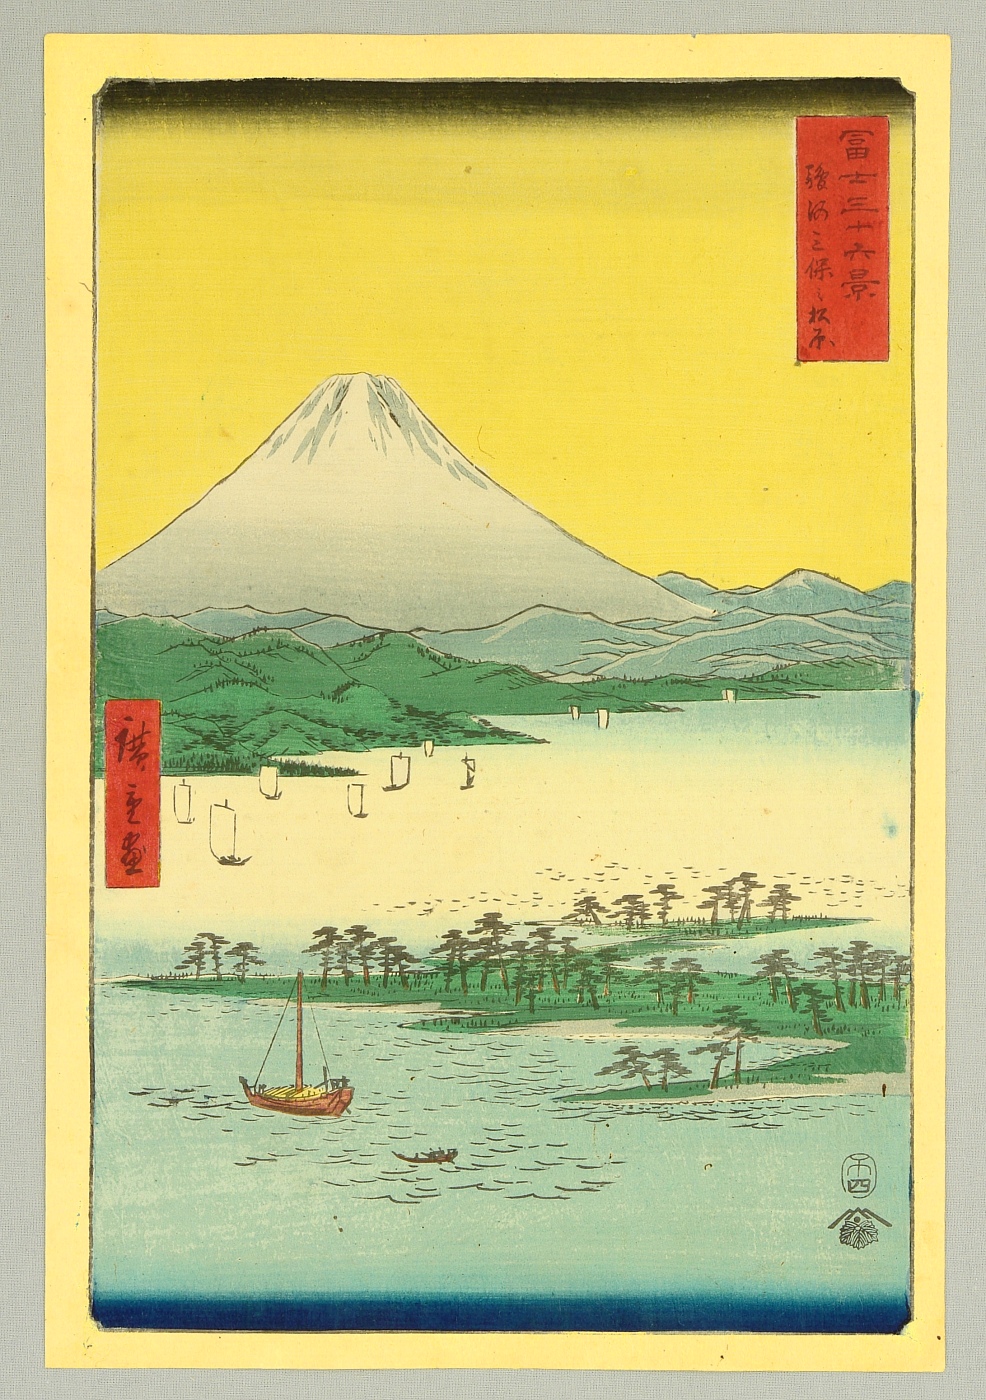 Utagawa Hiroshige: Suruga Miho no Matsubara 駿河三保之松原 (Miho 